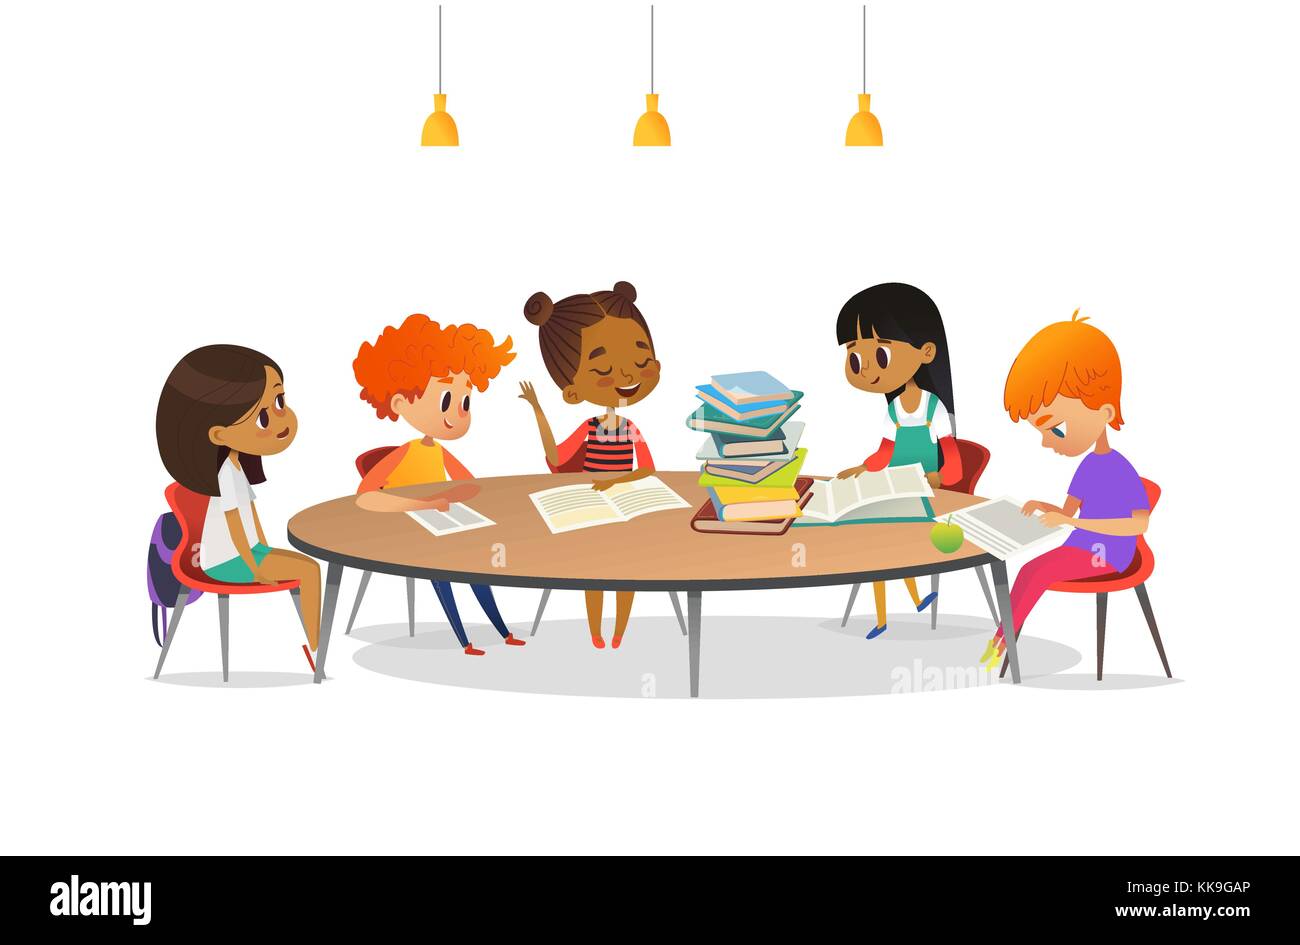 Los niños multirraciales sentados alrededor de la mesa redonda con pila de  libros sobre ella y escuchando a la niña la lectura en voz alta. La  literatura escolar club. Cute dibujos animados.